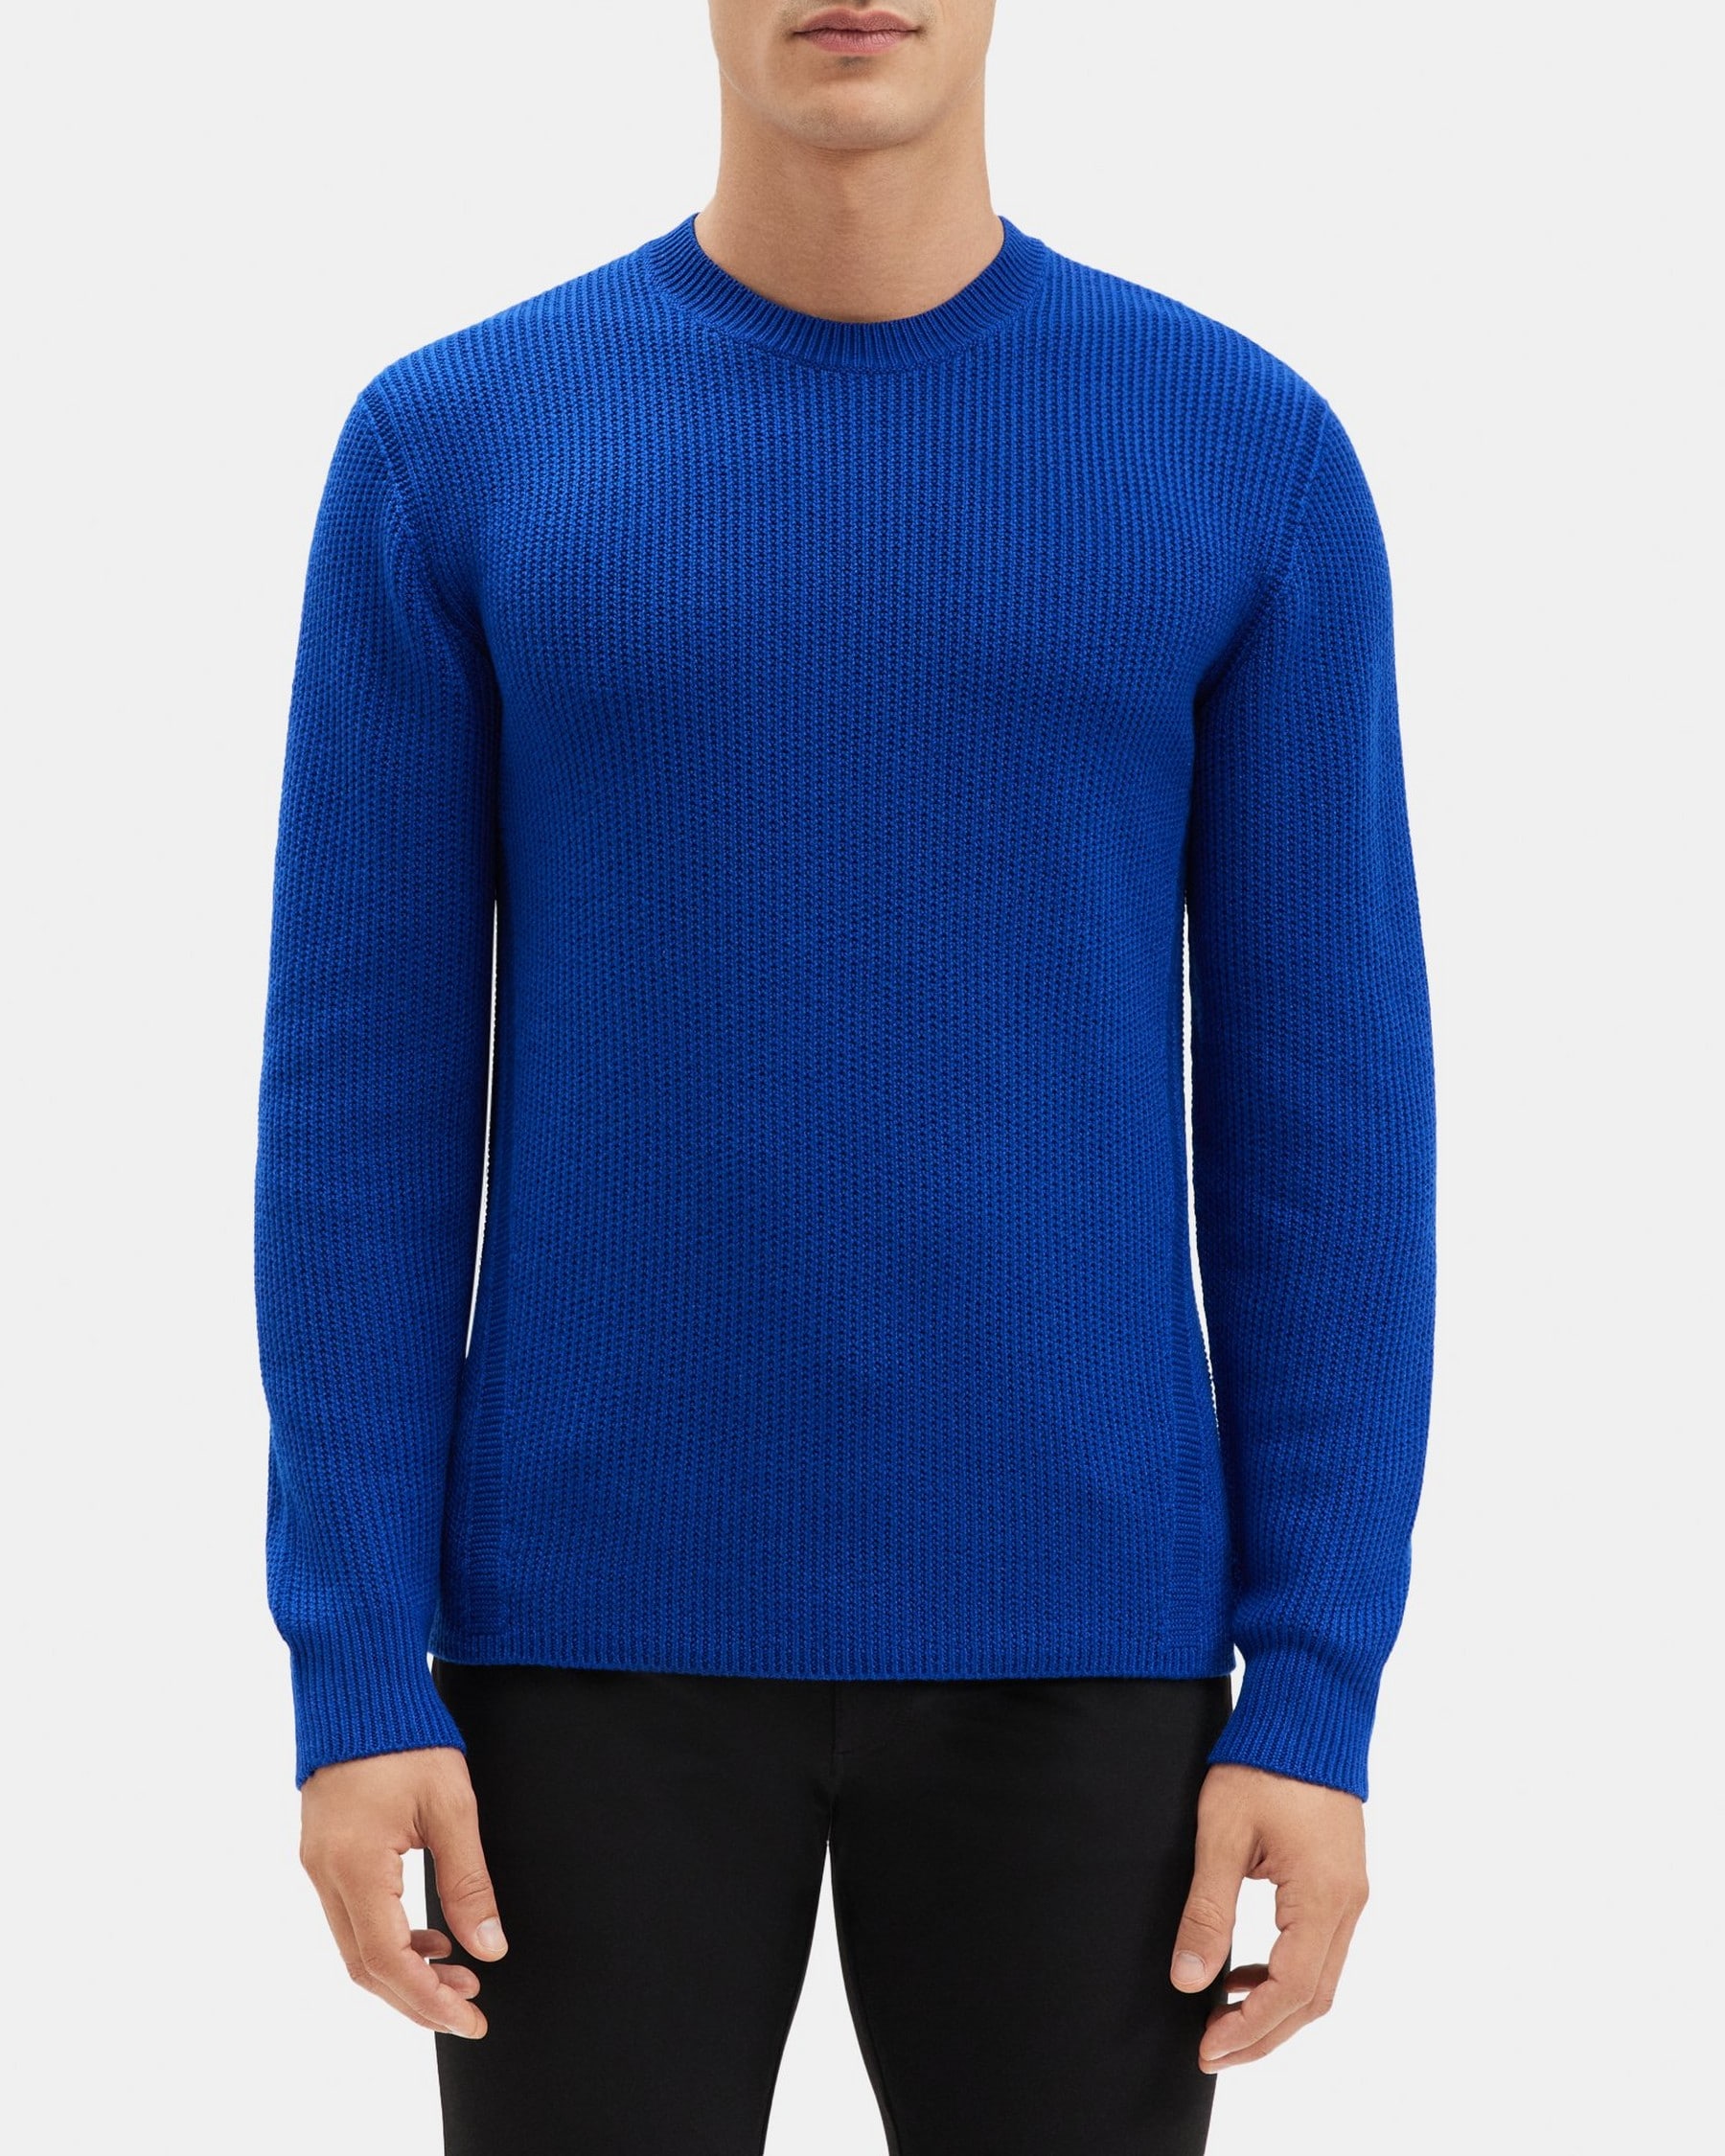 띠어리 Theory Crewneck Sweater in Merino Wool,KLEIN BLUE